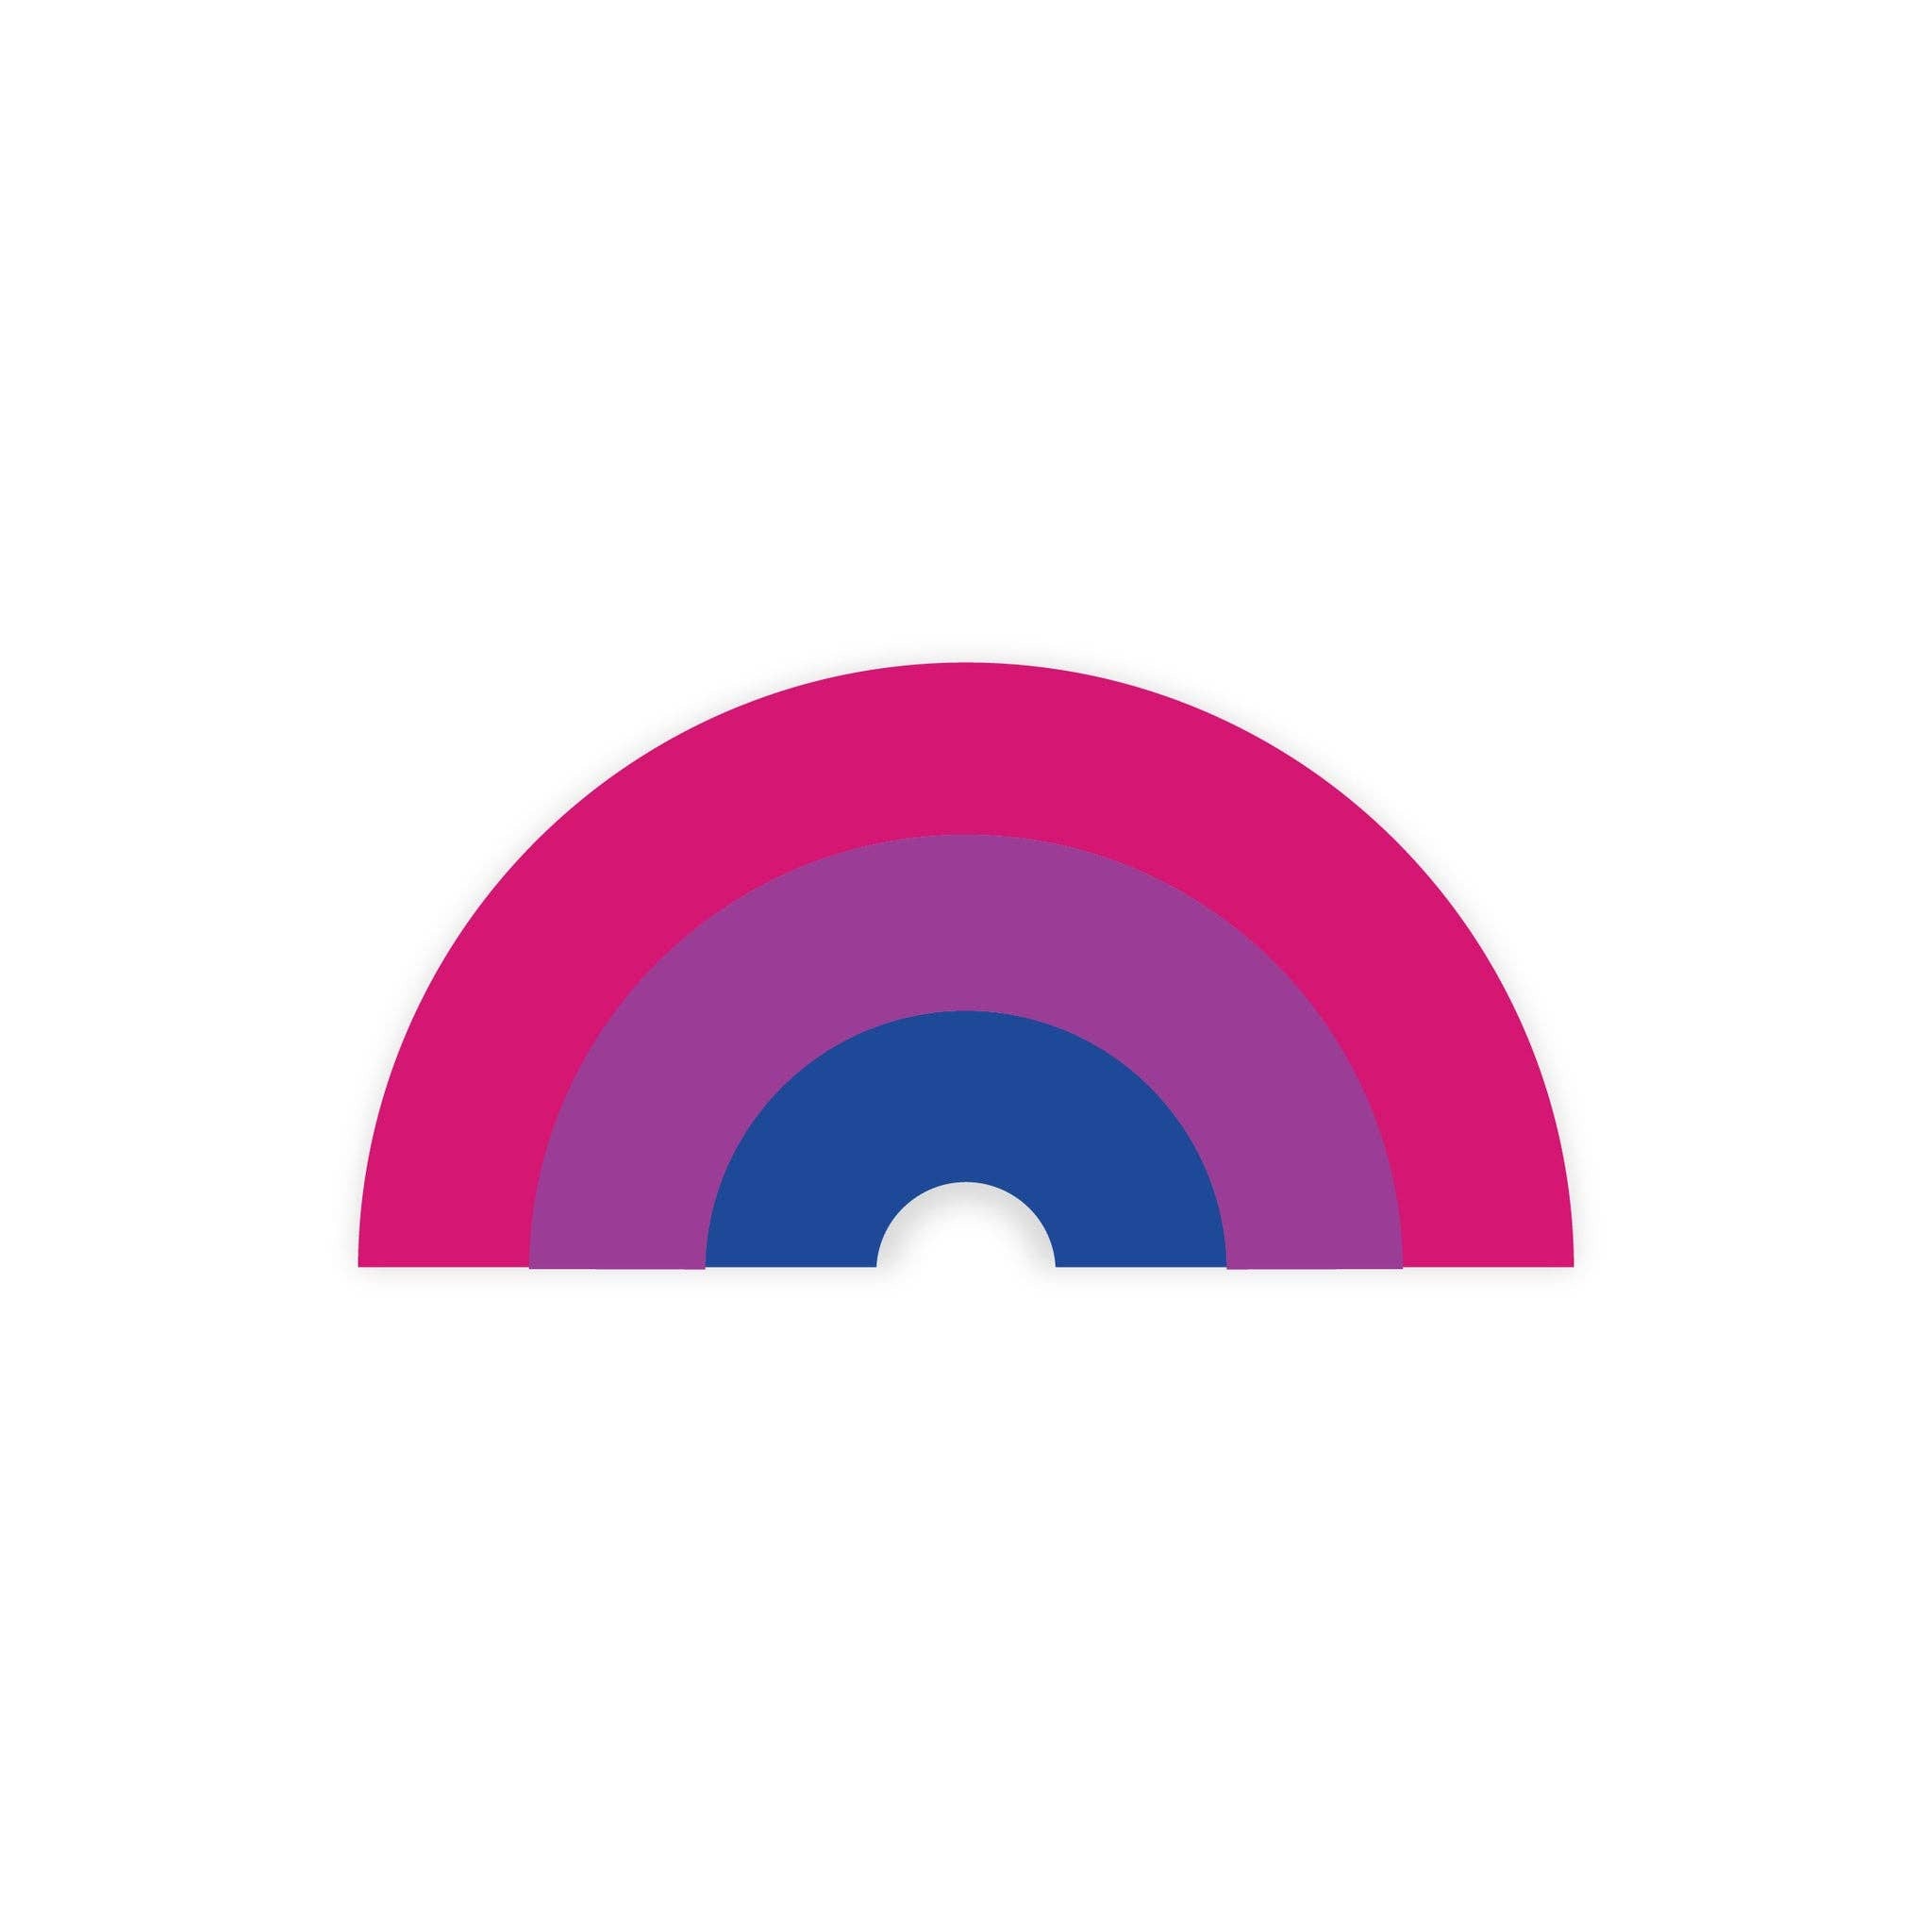 Bisexual Pride Rainbow Sticker - Spiral Circle